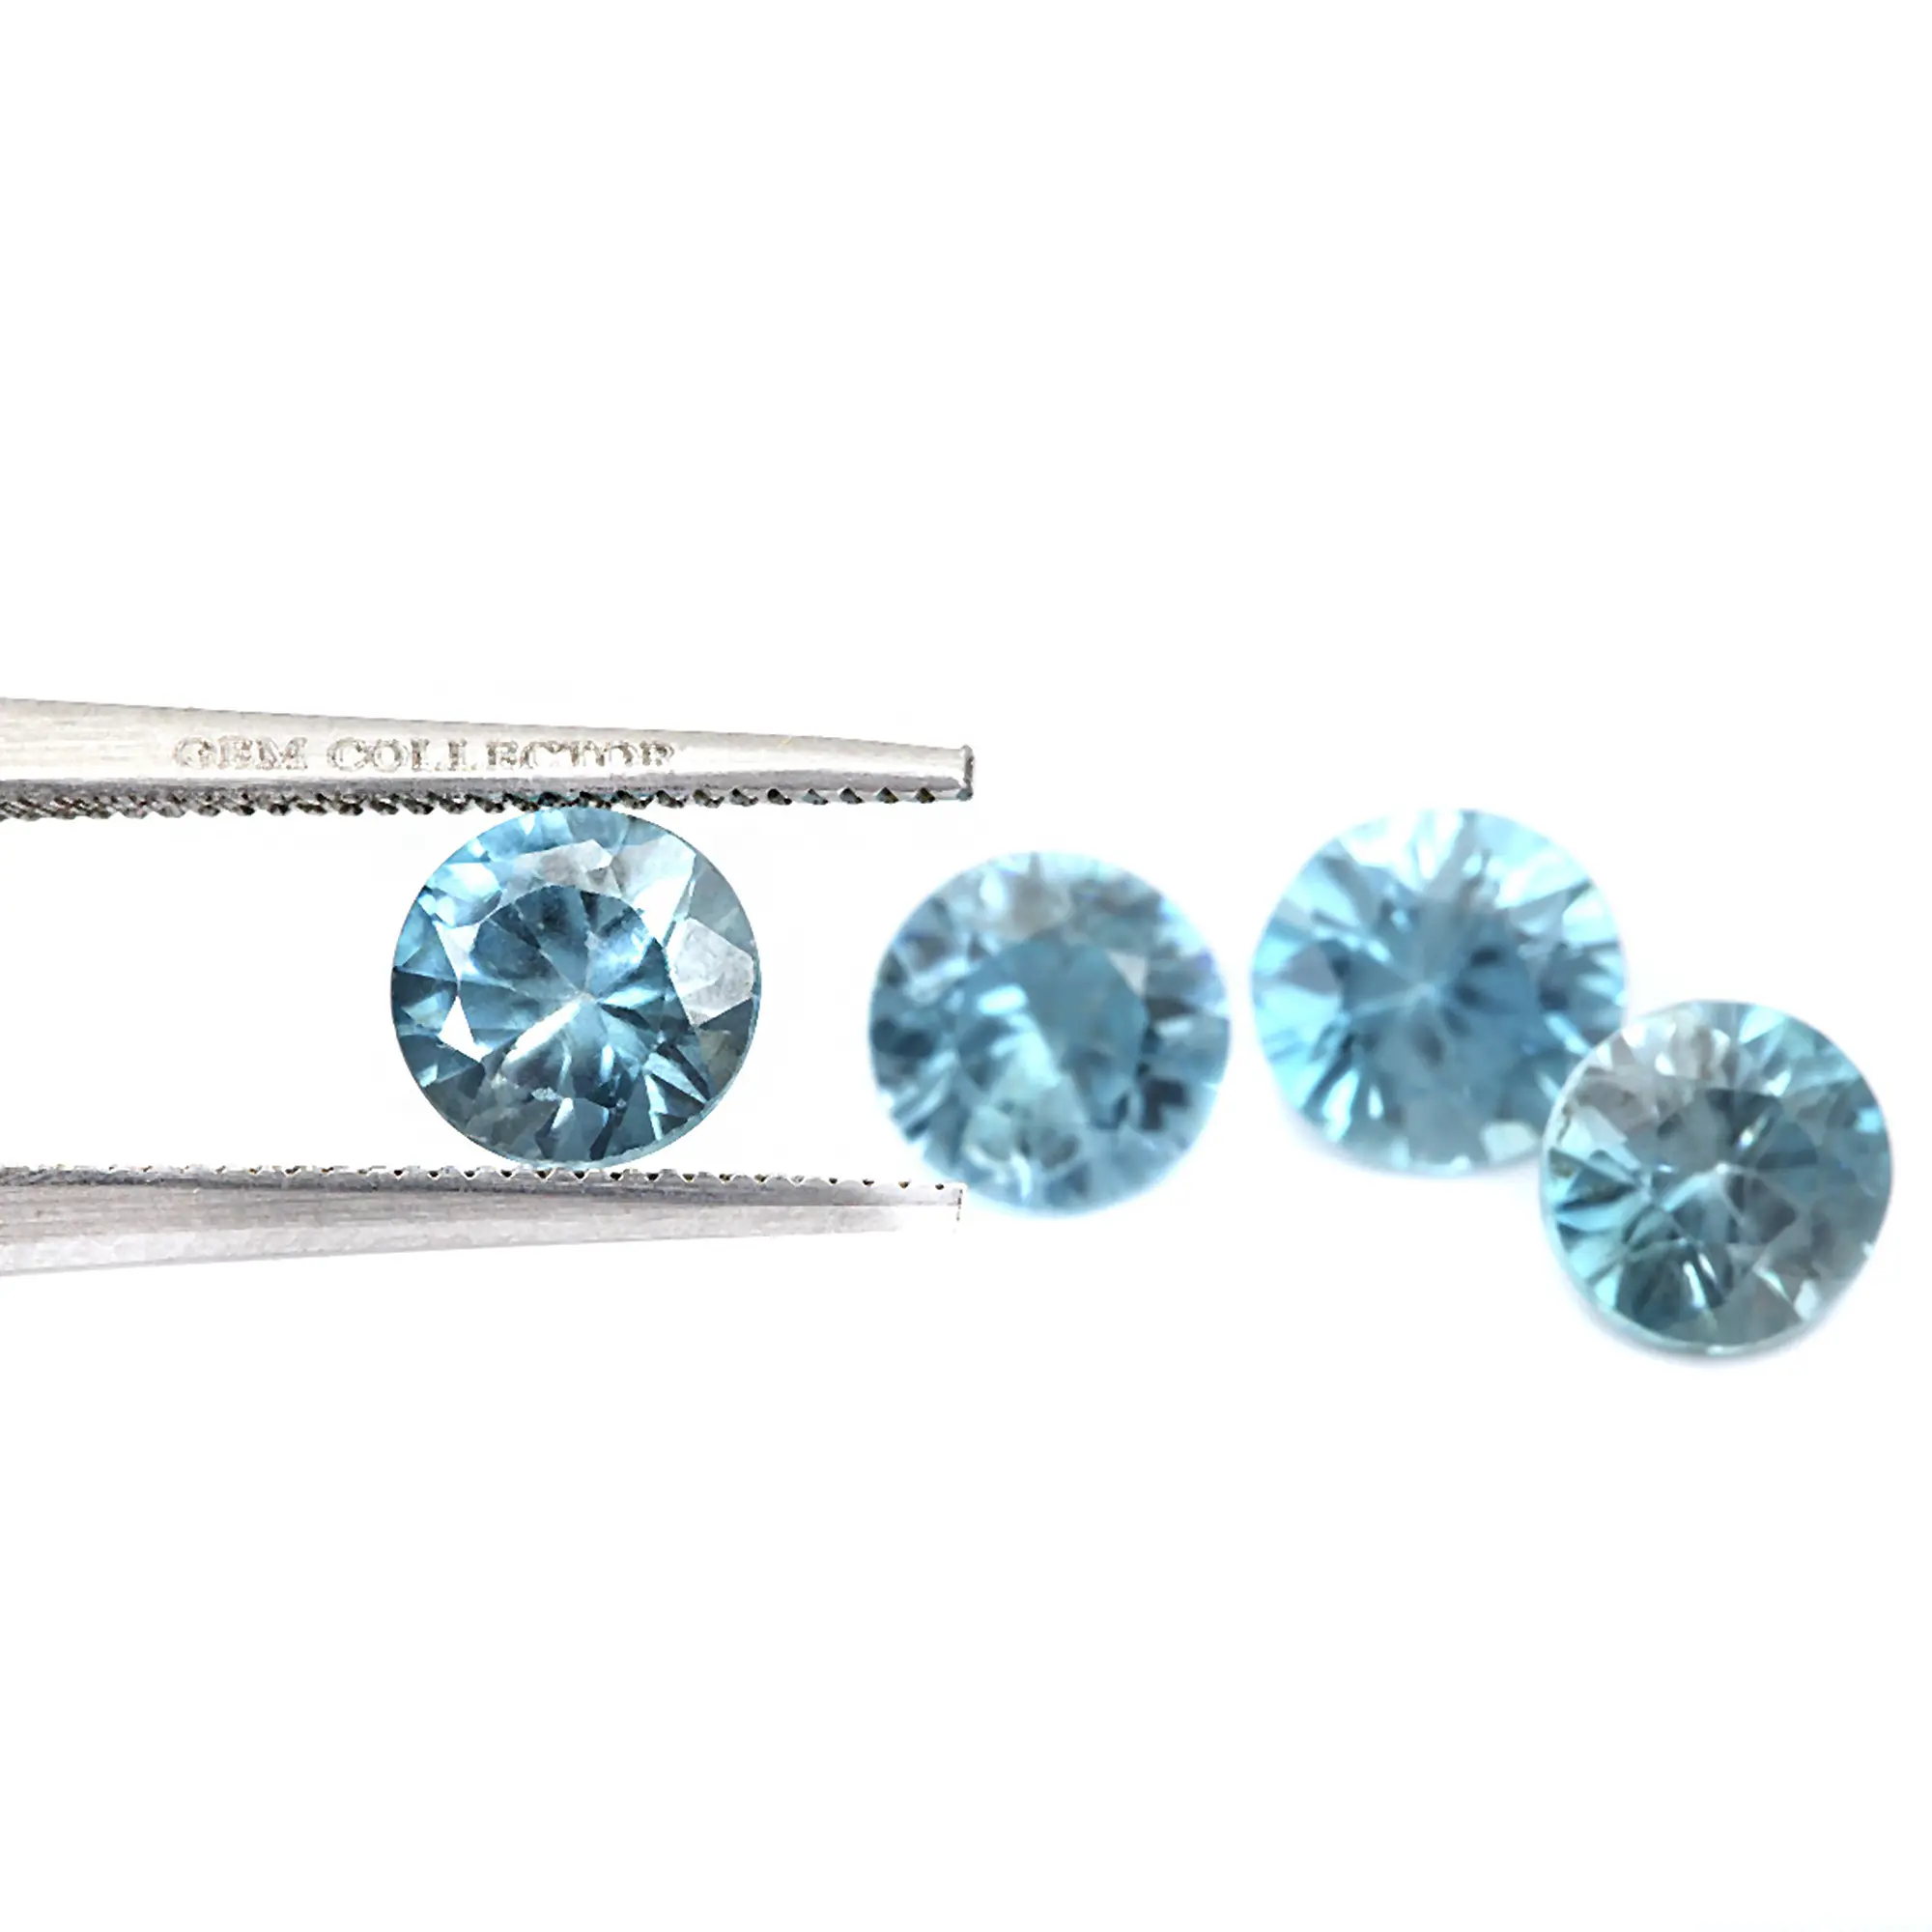 Pietra preziosa blu sciolta naturale di buona qualità sfaccettata con zirconi blu rotondi 4x4mm per la realizzazione di gioielli con pietre preziose sciolte